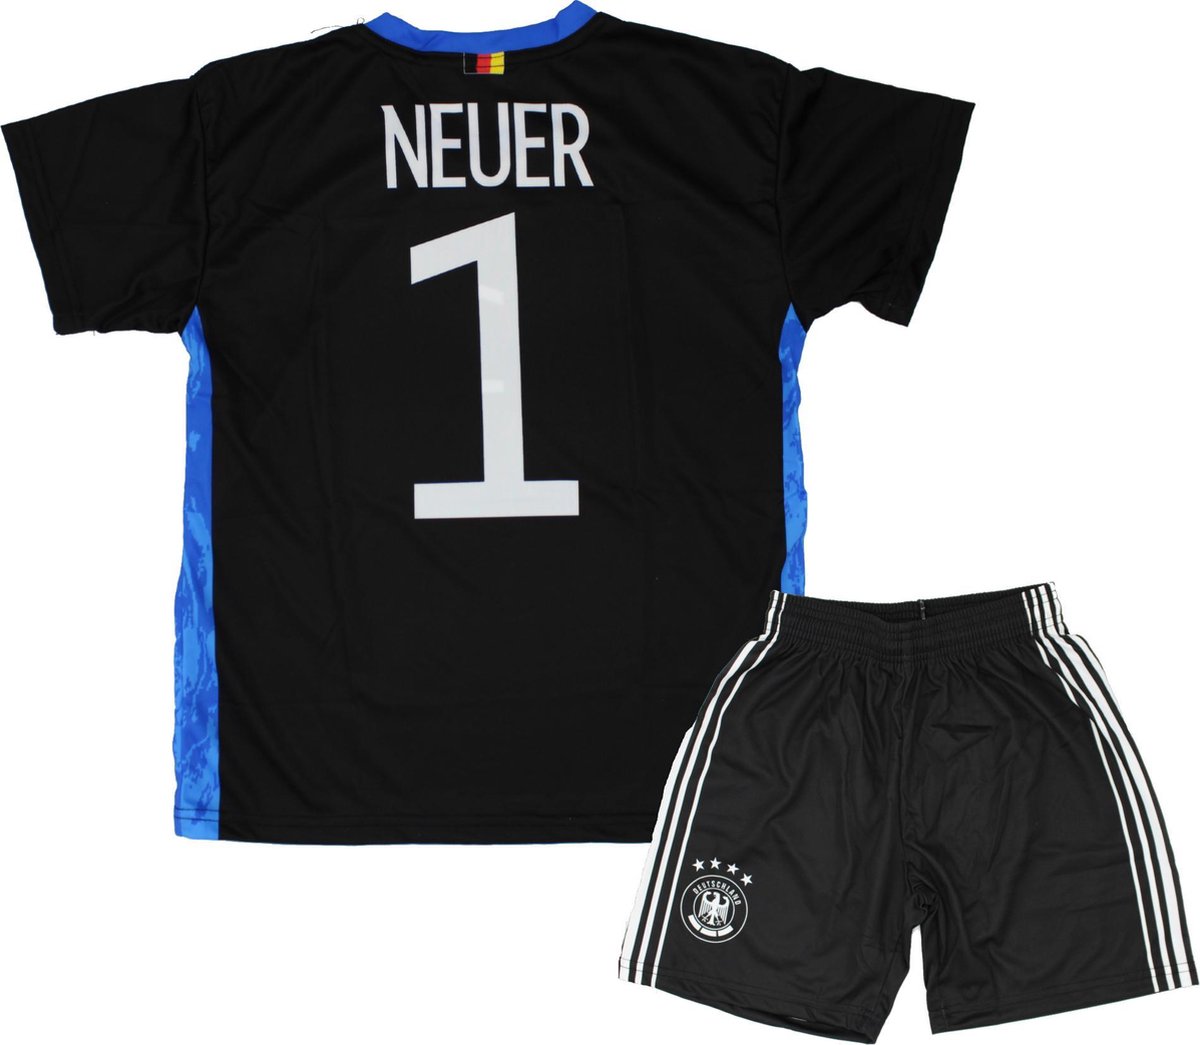 Neuer Keepers Tenue Voetbal Shirt + broekje set - Duitsland EK/WK voetbaltenue - Maat 104